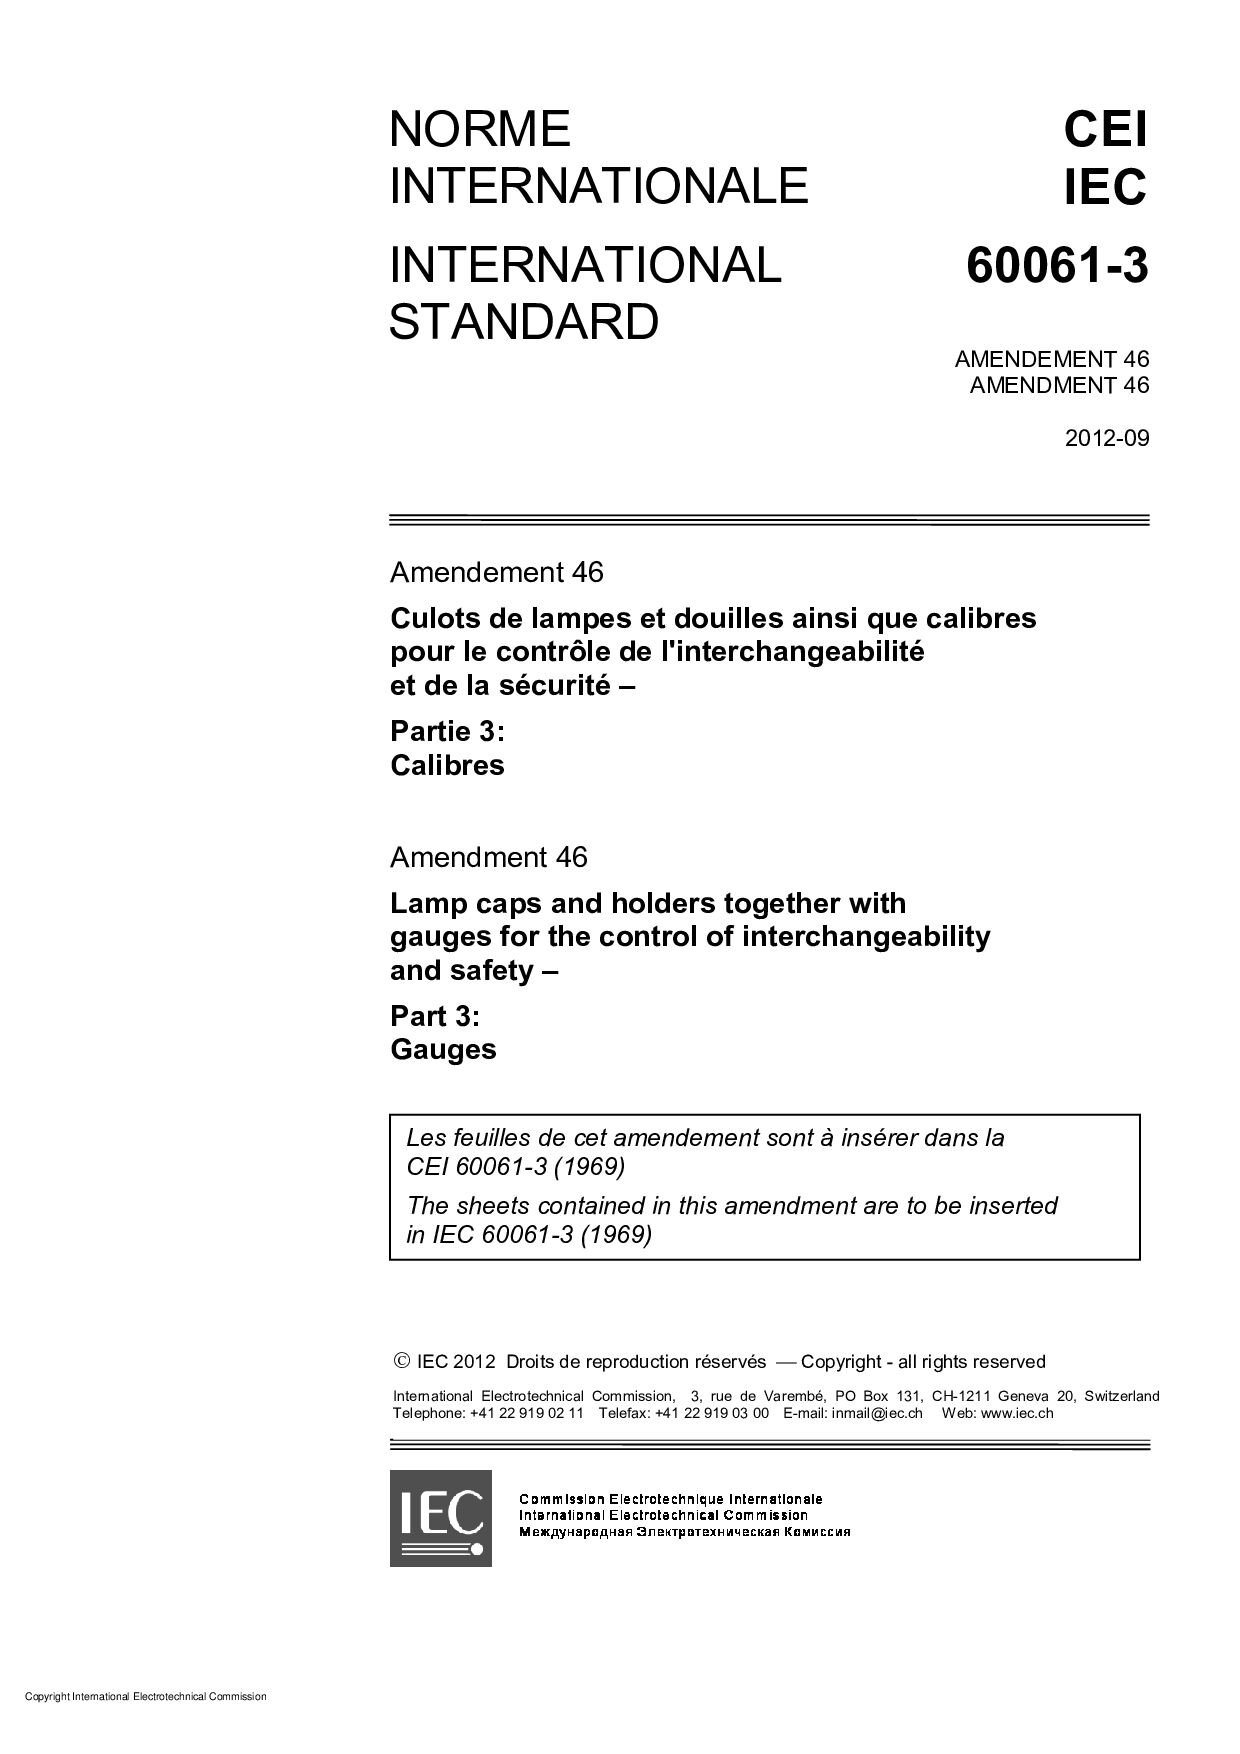 IEC 60061-3:1969/AMD46:2012